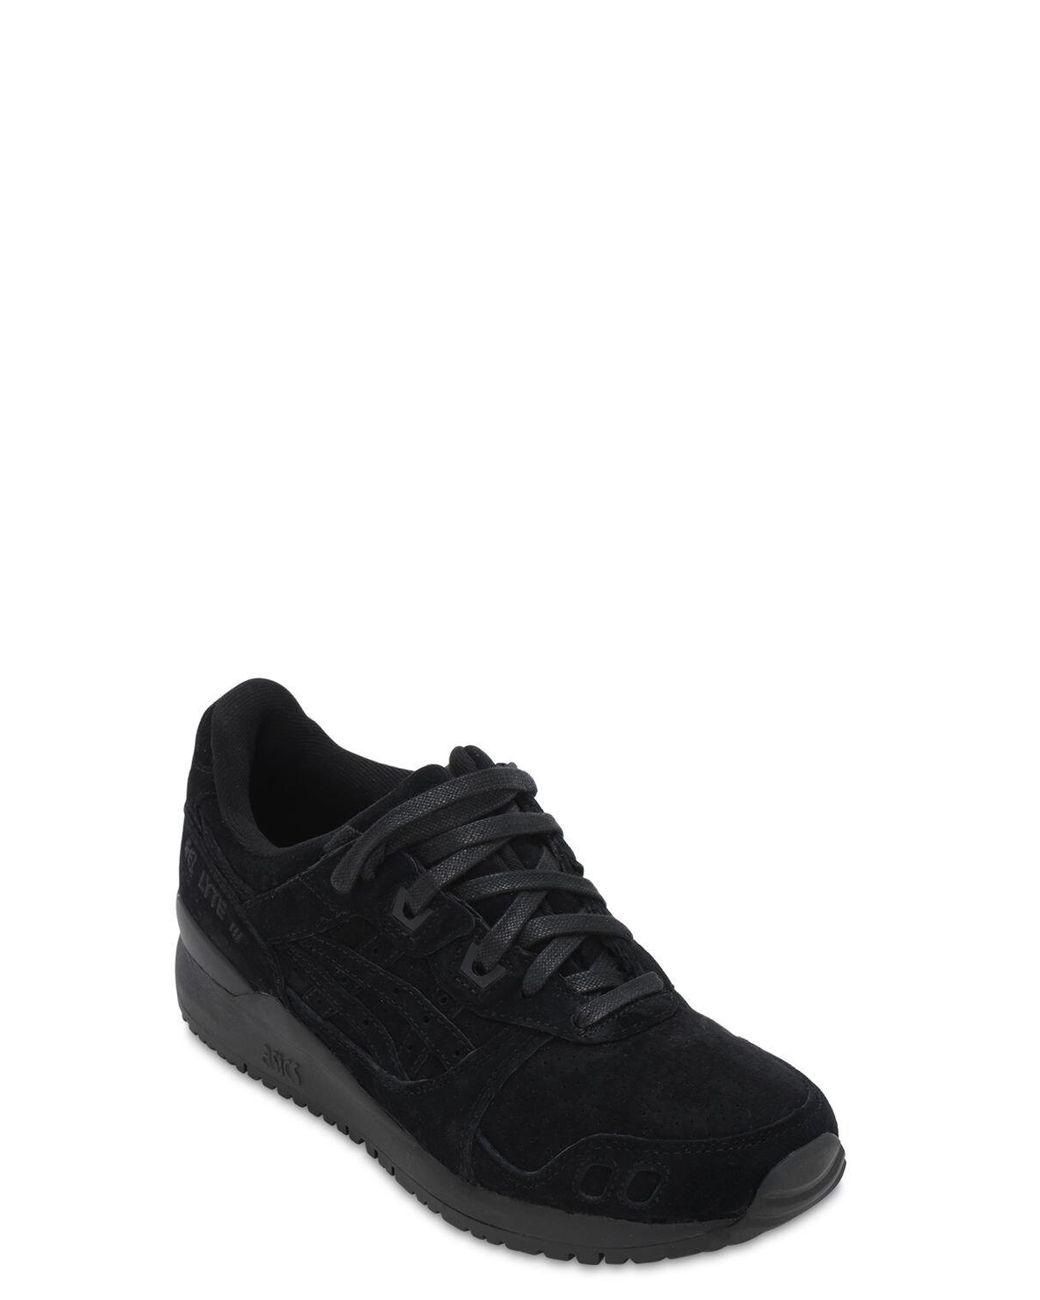 Asics Suede Gel-lyte Iii Og Sneakers in Black/Black (Black) - Save 54% |  Lyst